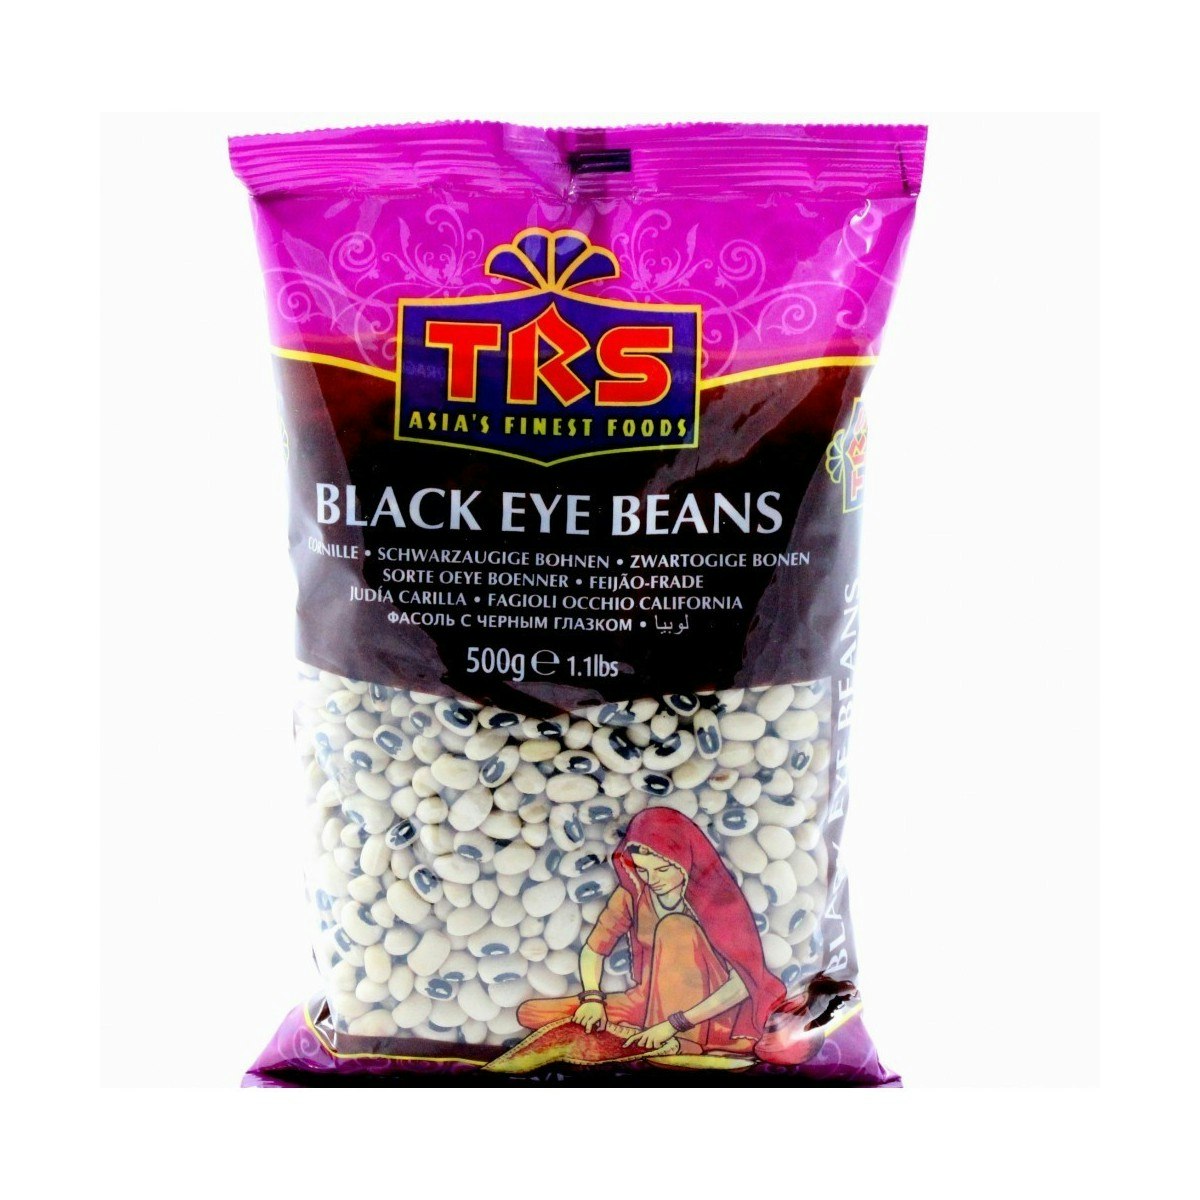 Black Eye Beans (TRS) - 500g, 1Kg, 2Kg